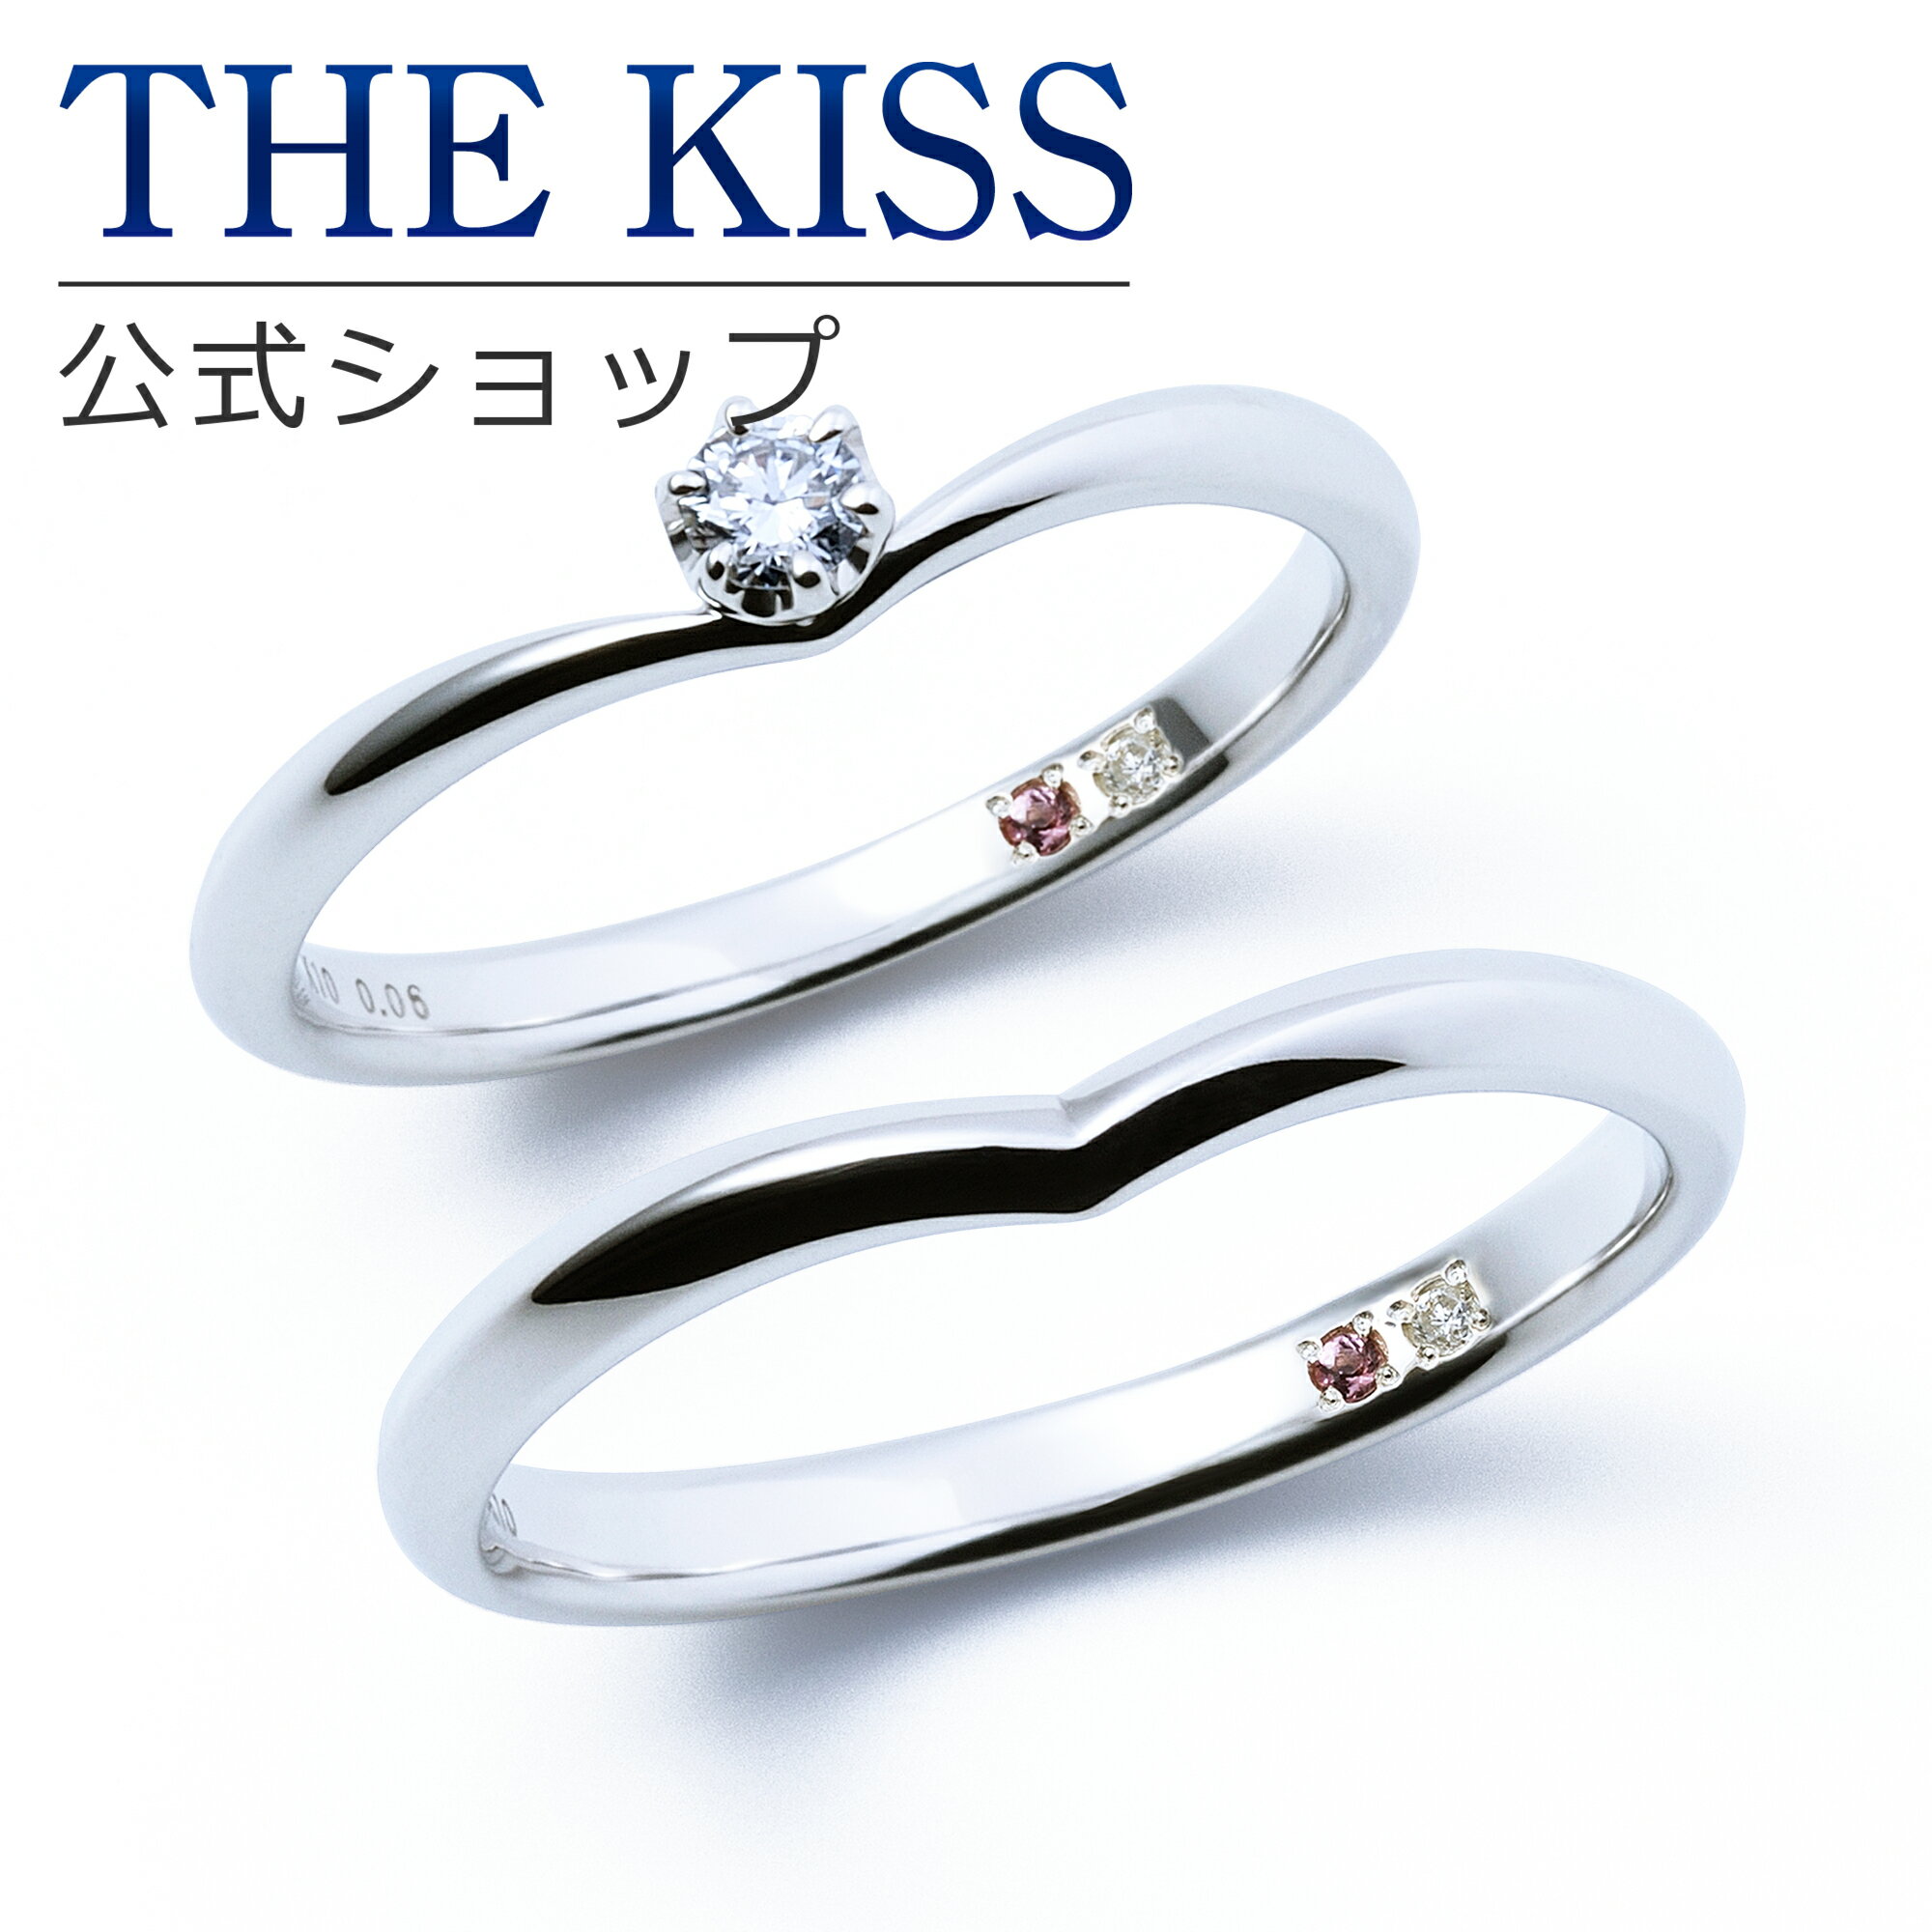 【ラッピング無料】【刻印無料】【THE KISS Anniversary】 K10 ホワイトゴールド マリッジ リング 結婚指輪 ペアリング wg THE KISS ザキッス リング・指輪 7621122001A-7621122002A 誕生石 セット シンプル 男性 女性 2個セット ブライダル